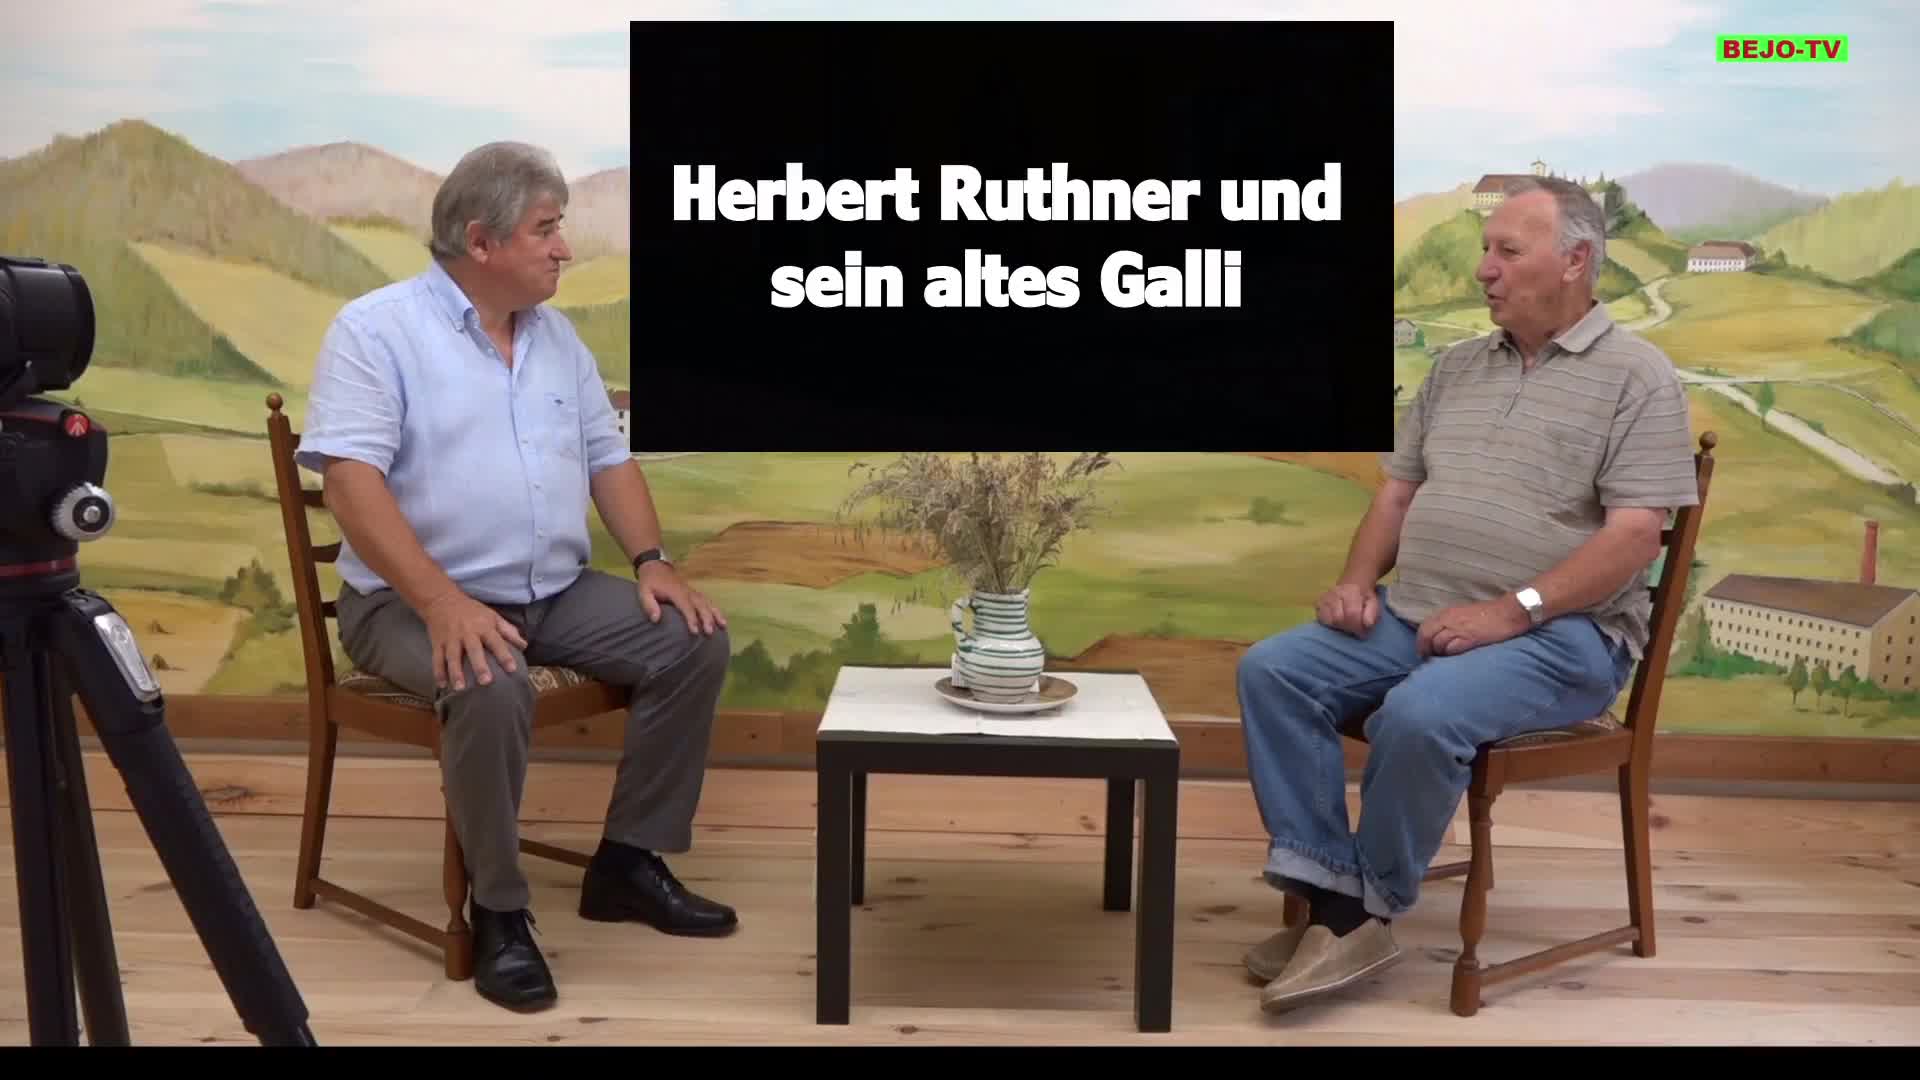 Herbert Ruthner und sein altes Galli